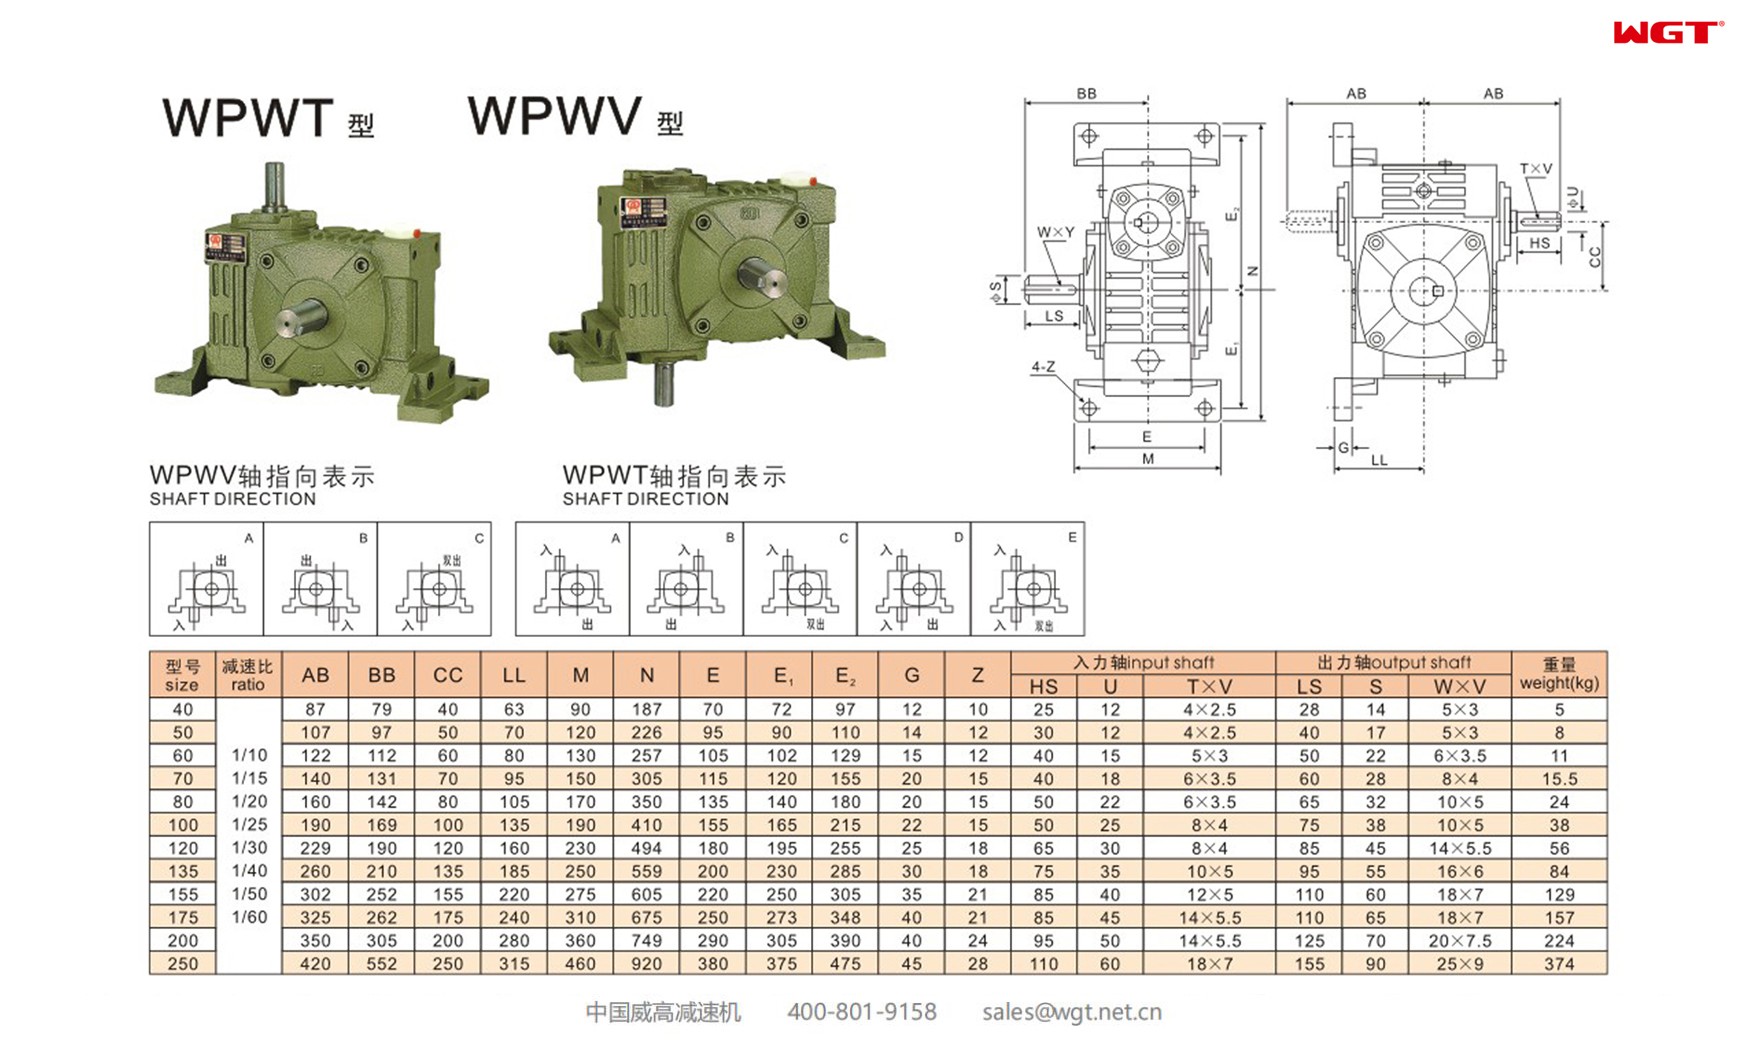 WPWT80 worm gear reducer universal speed reducer 